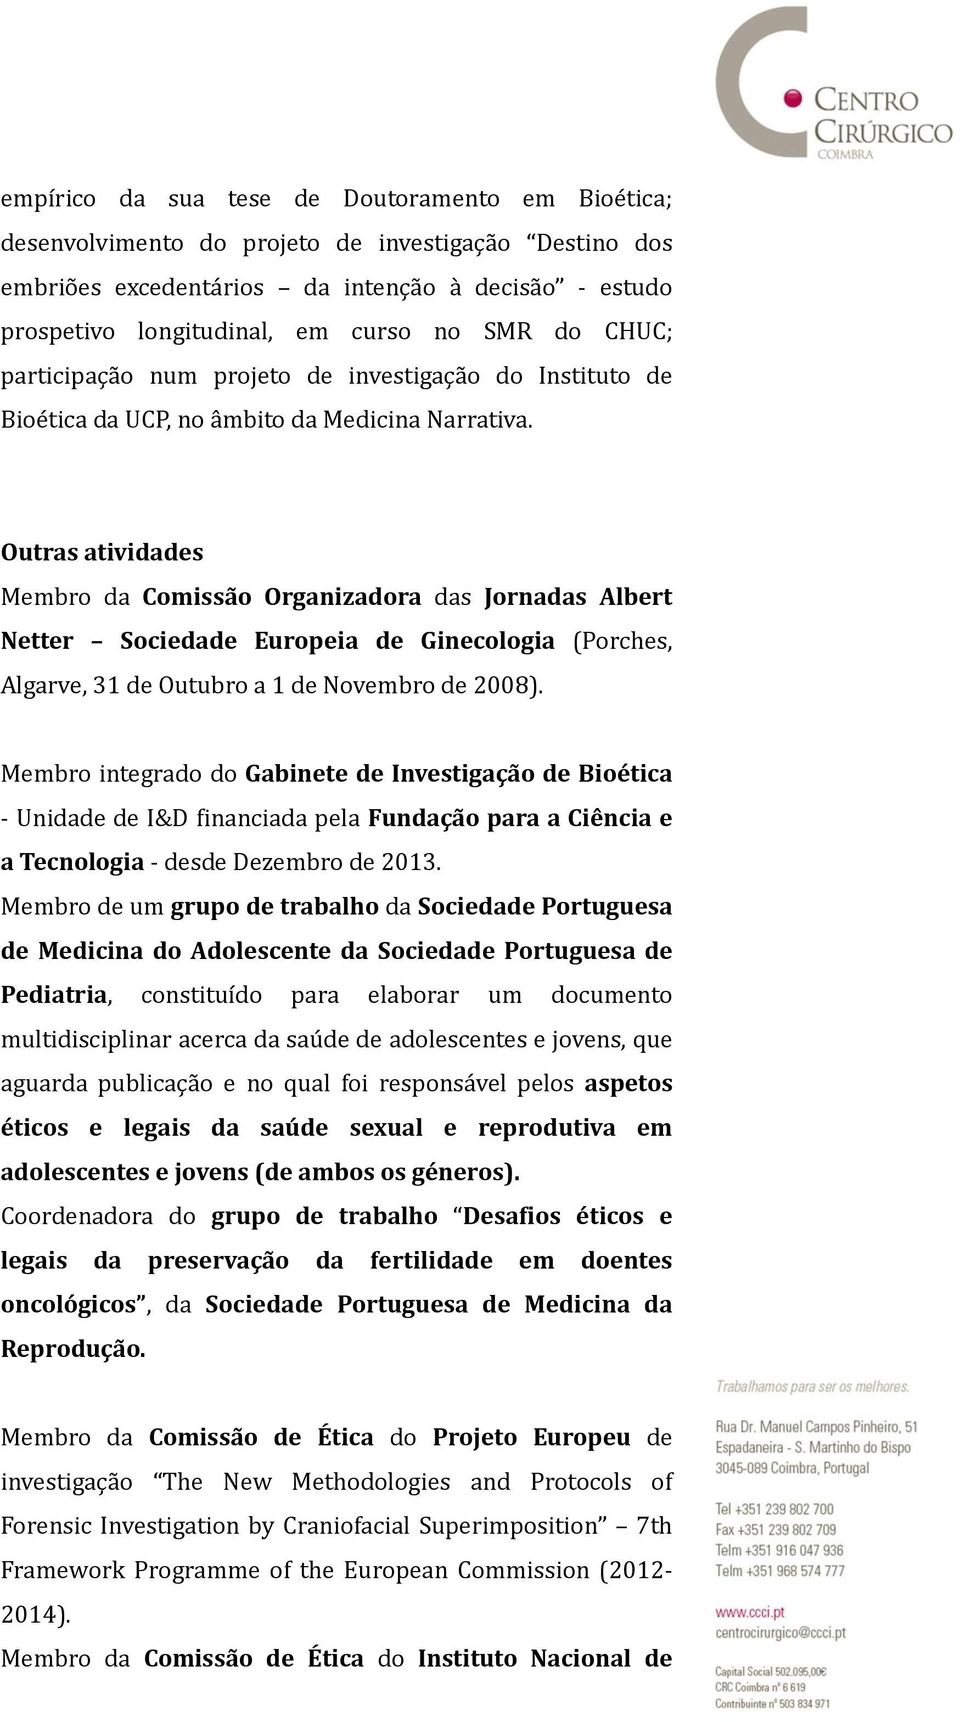 Outras atividades Membro da Comissão Organizadora das Jornadas Albert Netter Sociedade Europeia de Ginecologia (Porches, Algarve, 31 de Outubro a 1 de Novembro de 2008).